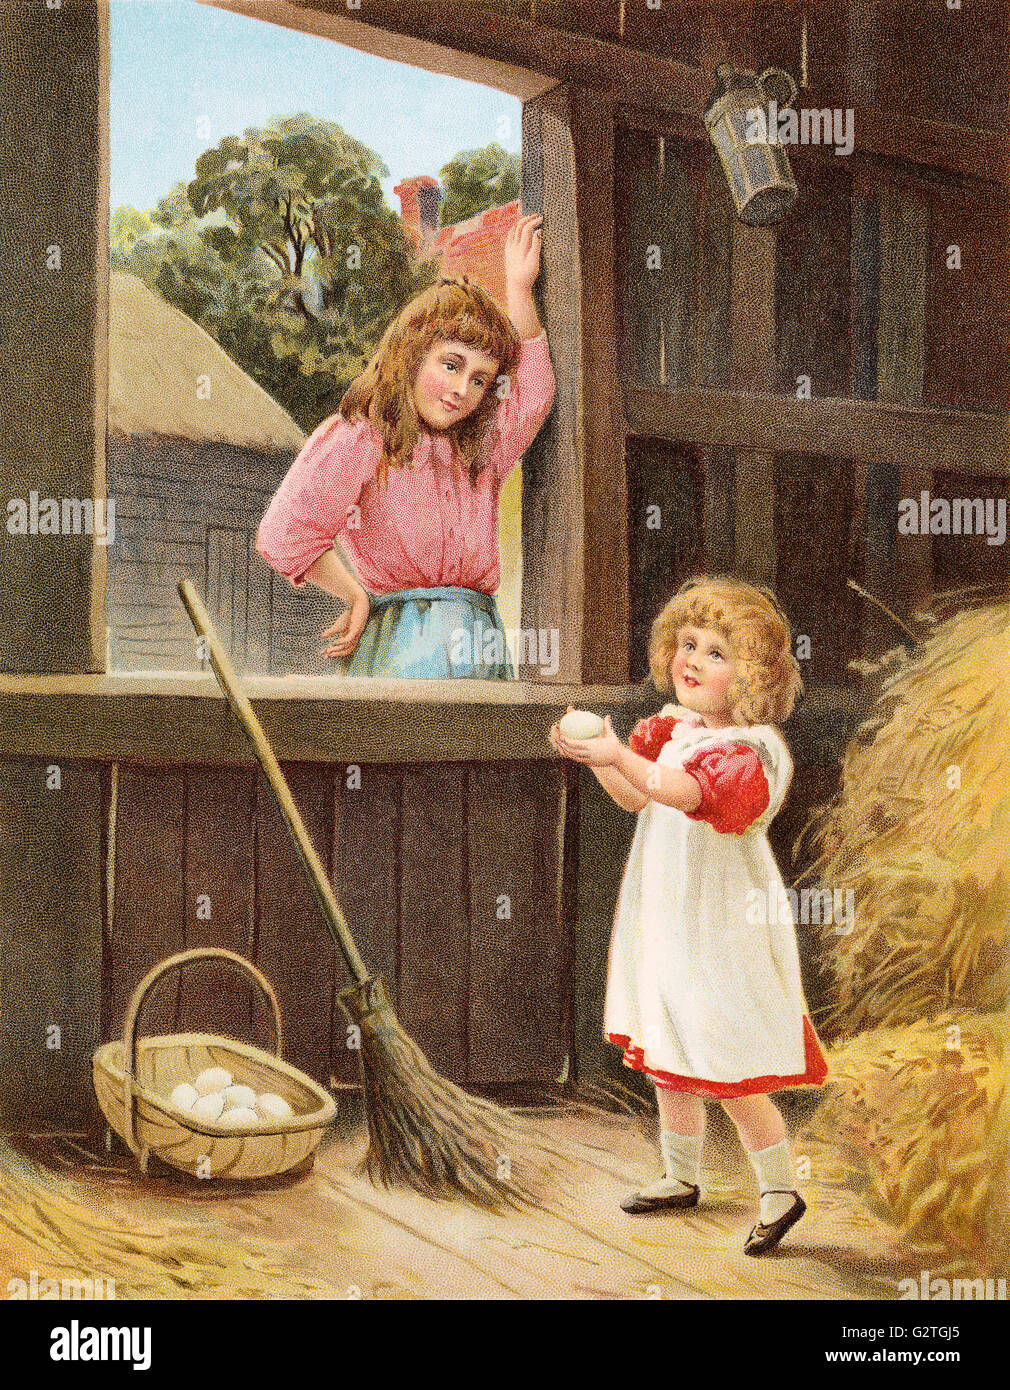 Farbe Abbildung von zwei viktorianische Mädchen sammeln von Eiern in einer Scheune auf einem Bauernhof. Stockfoto